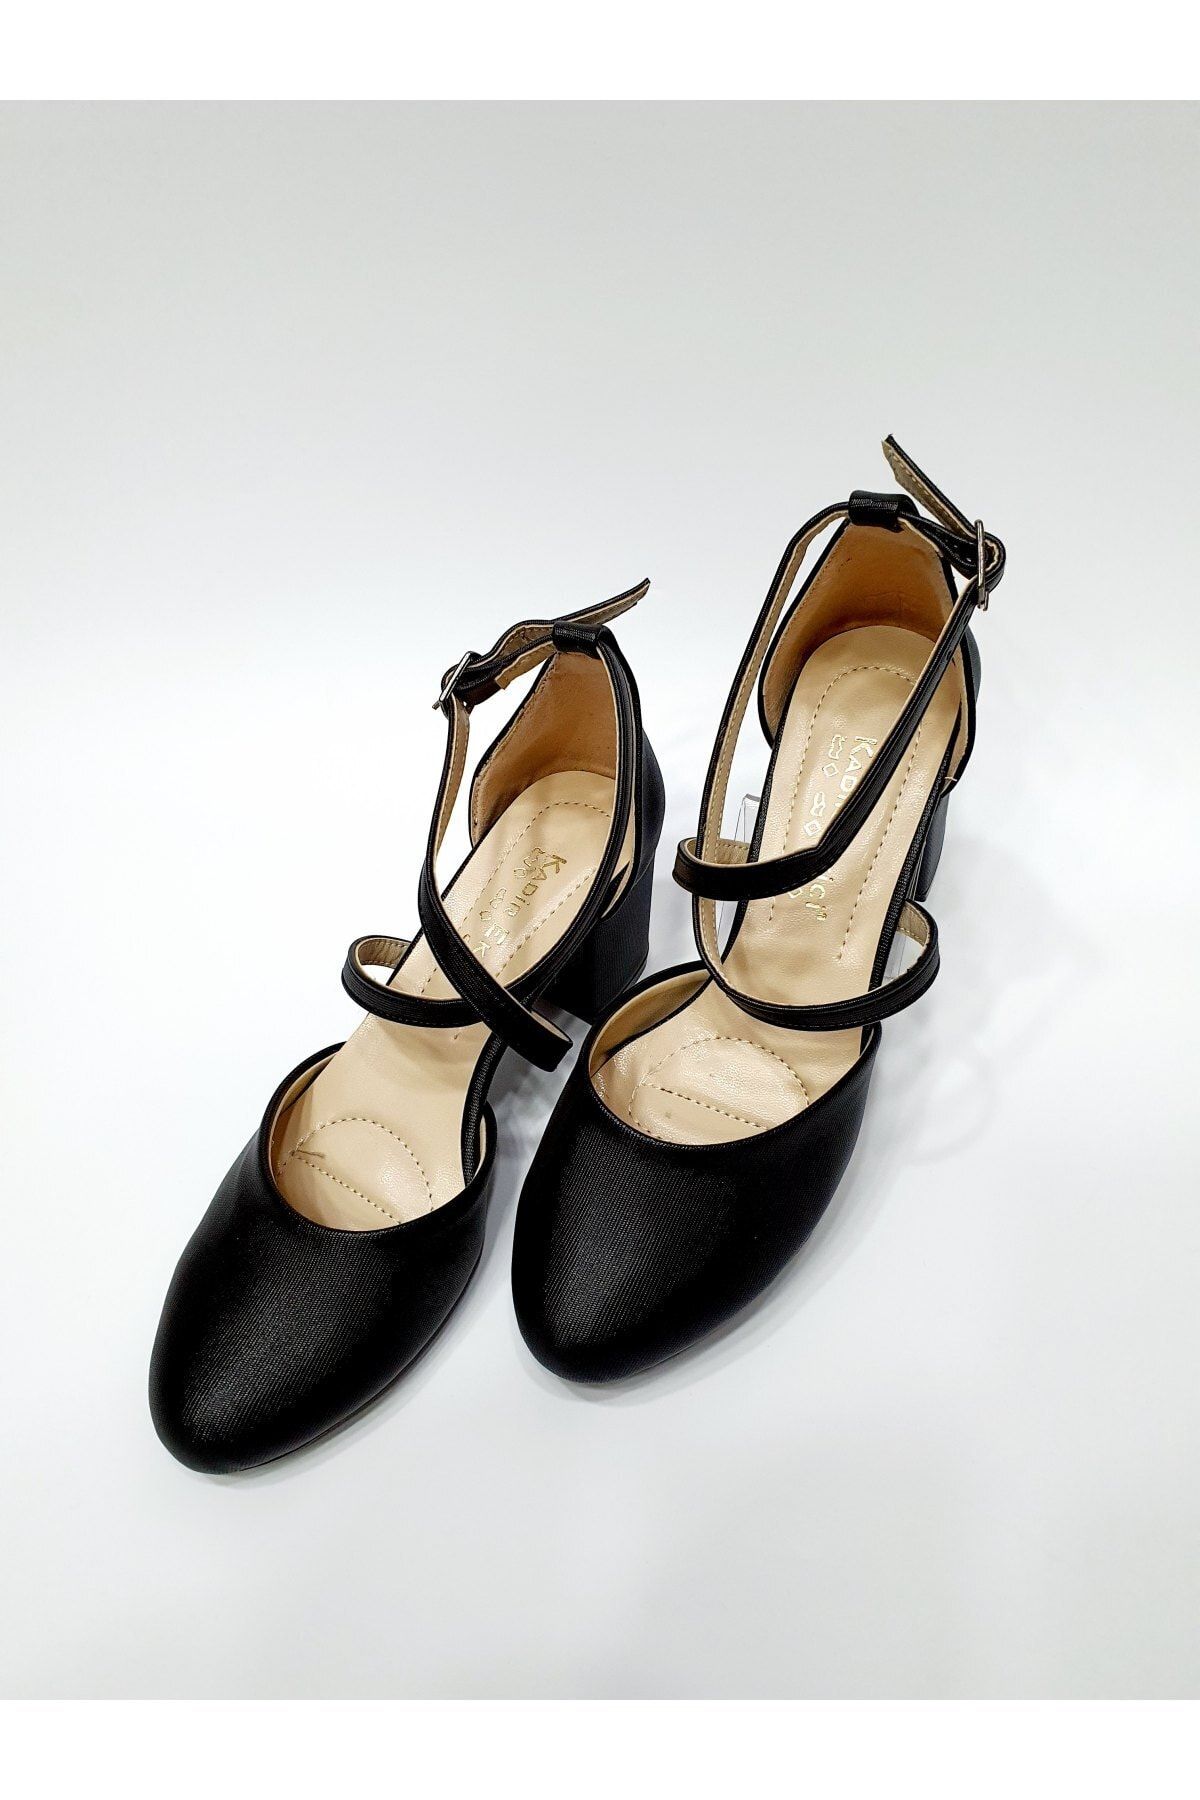 NİLYA Kadın Siyah Yanı Açık Çapraz Bantlı Yuvarlak Topuklu Ayakkabı